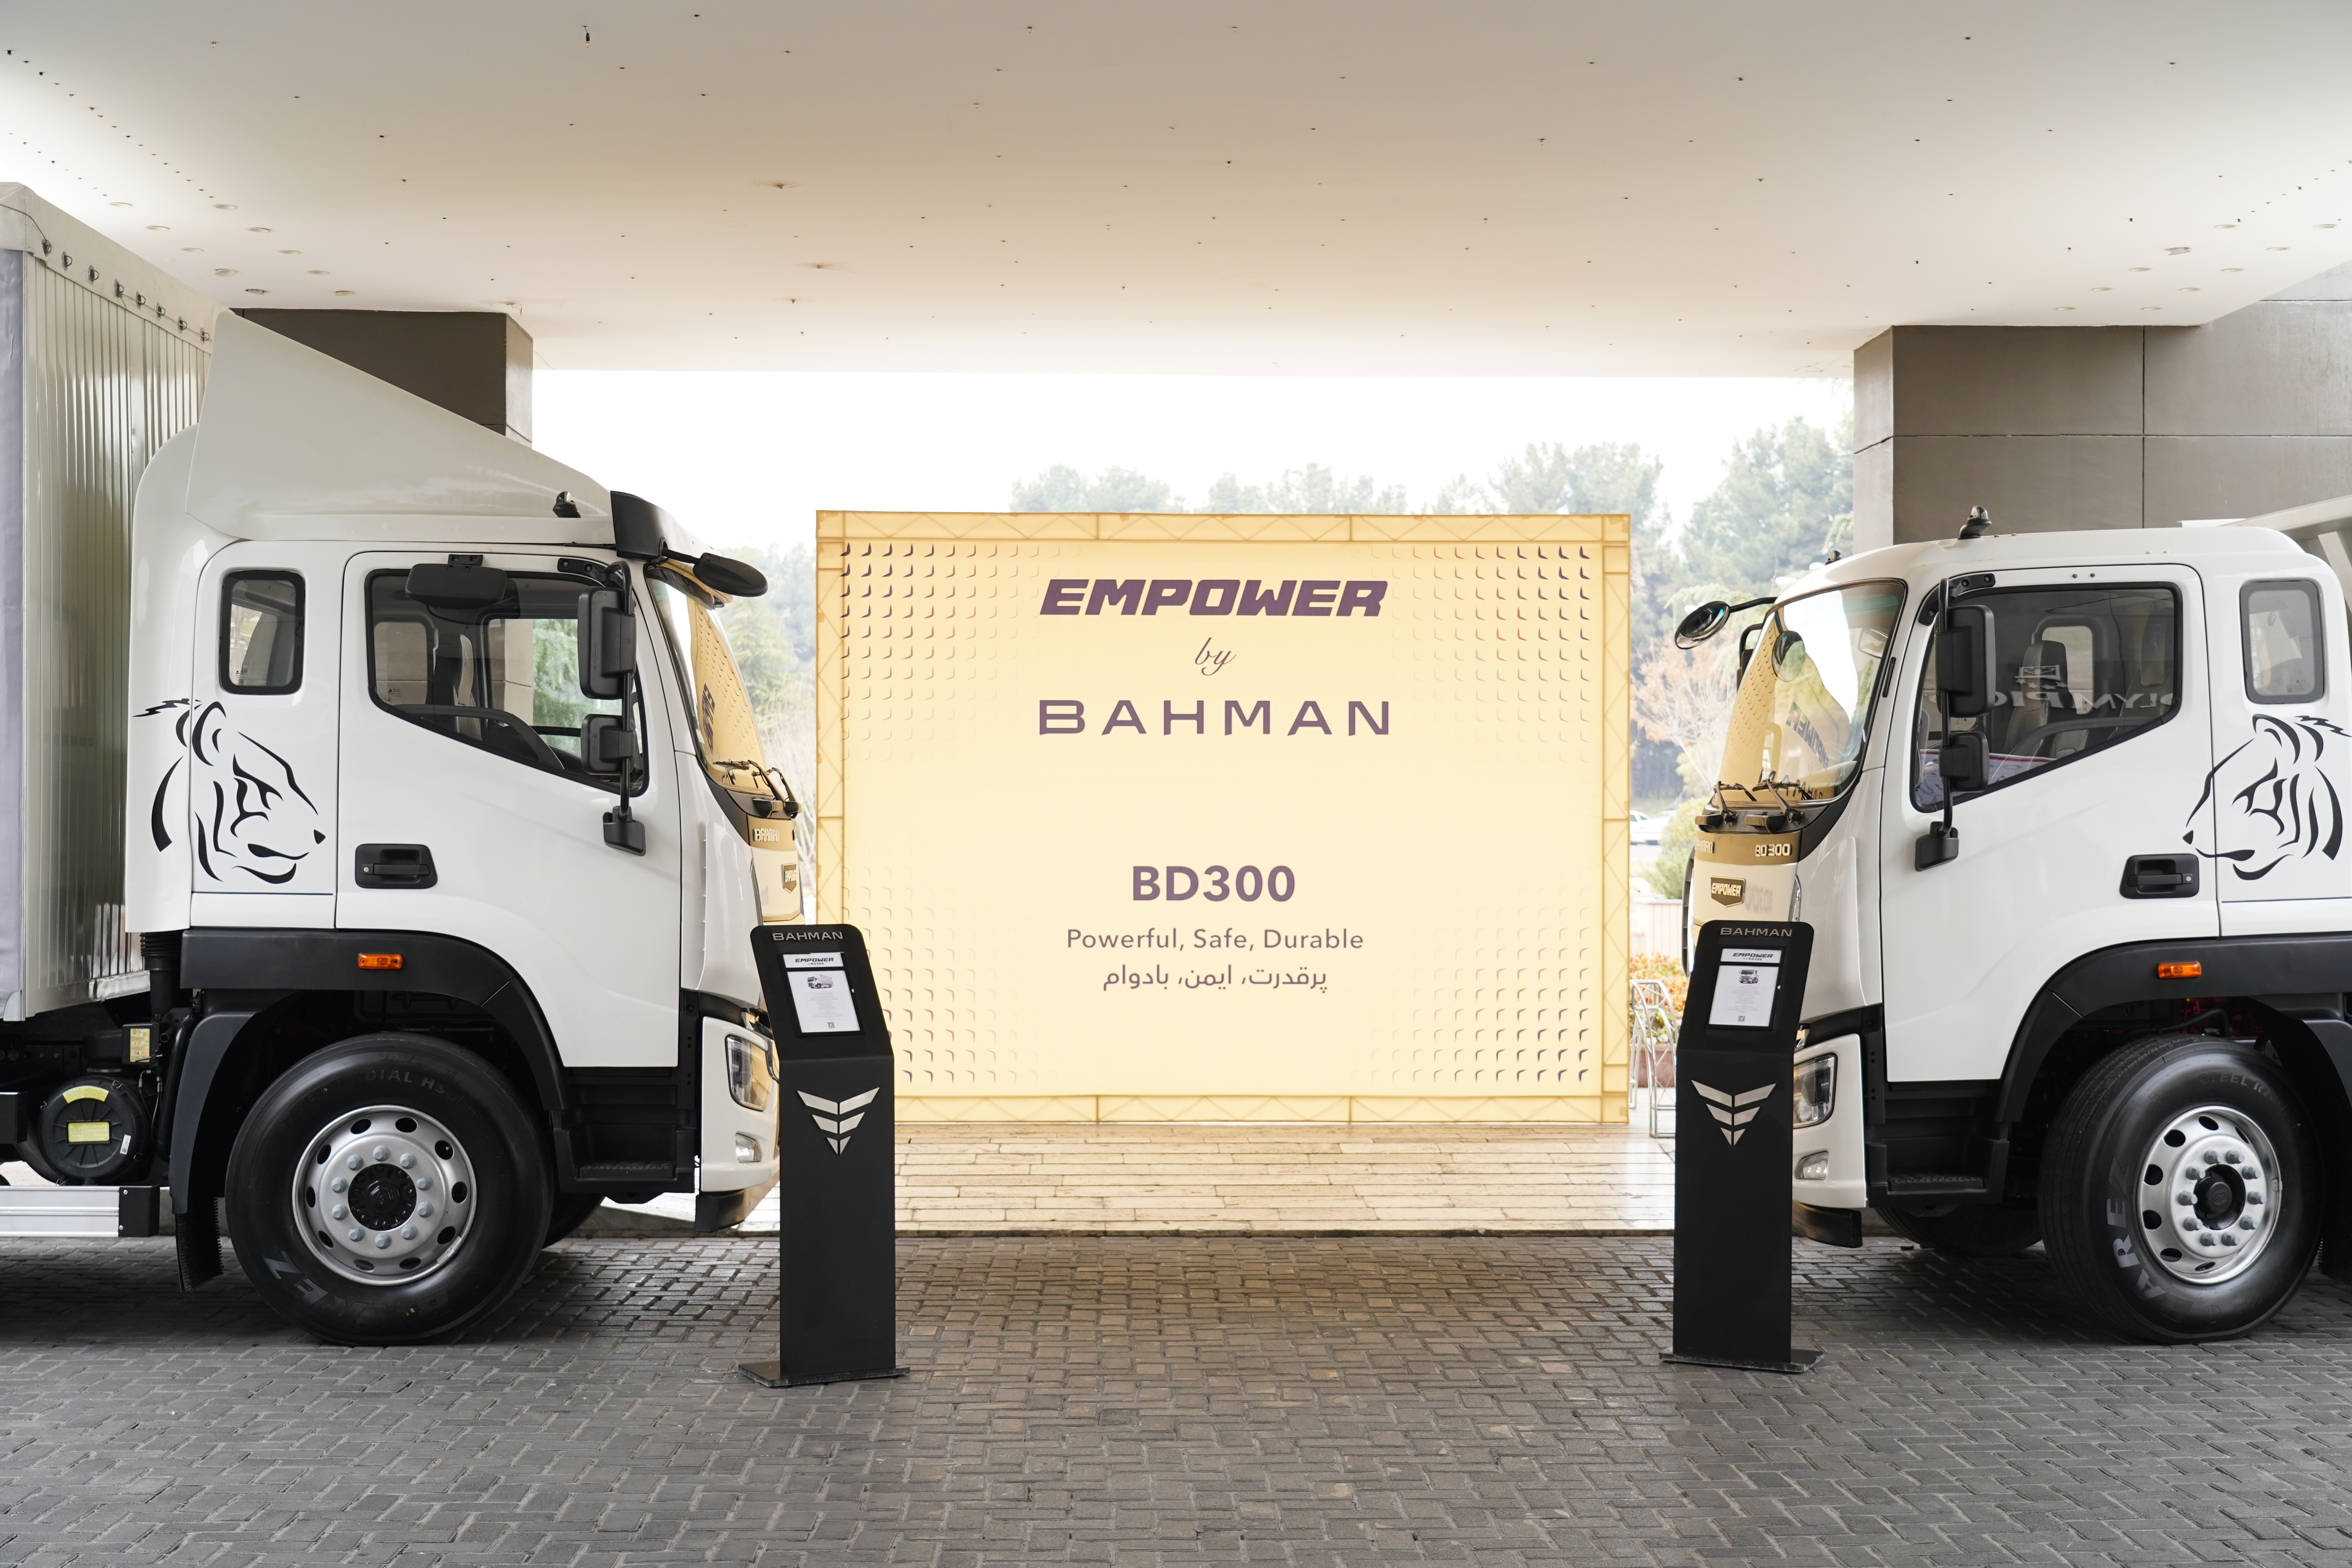 رونمایی از کامیون BD300 امپاور گروه بهمن در هتل المپیک (عکس)